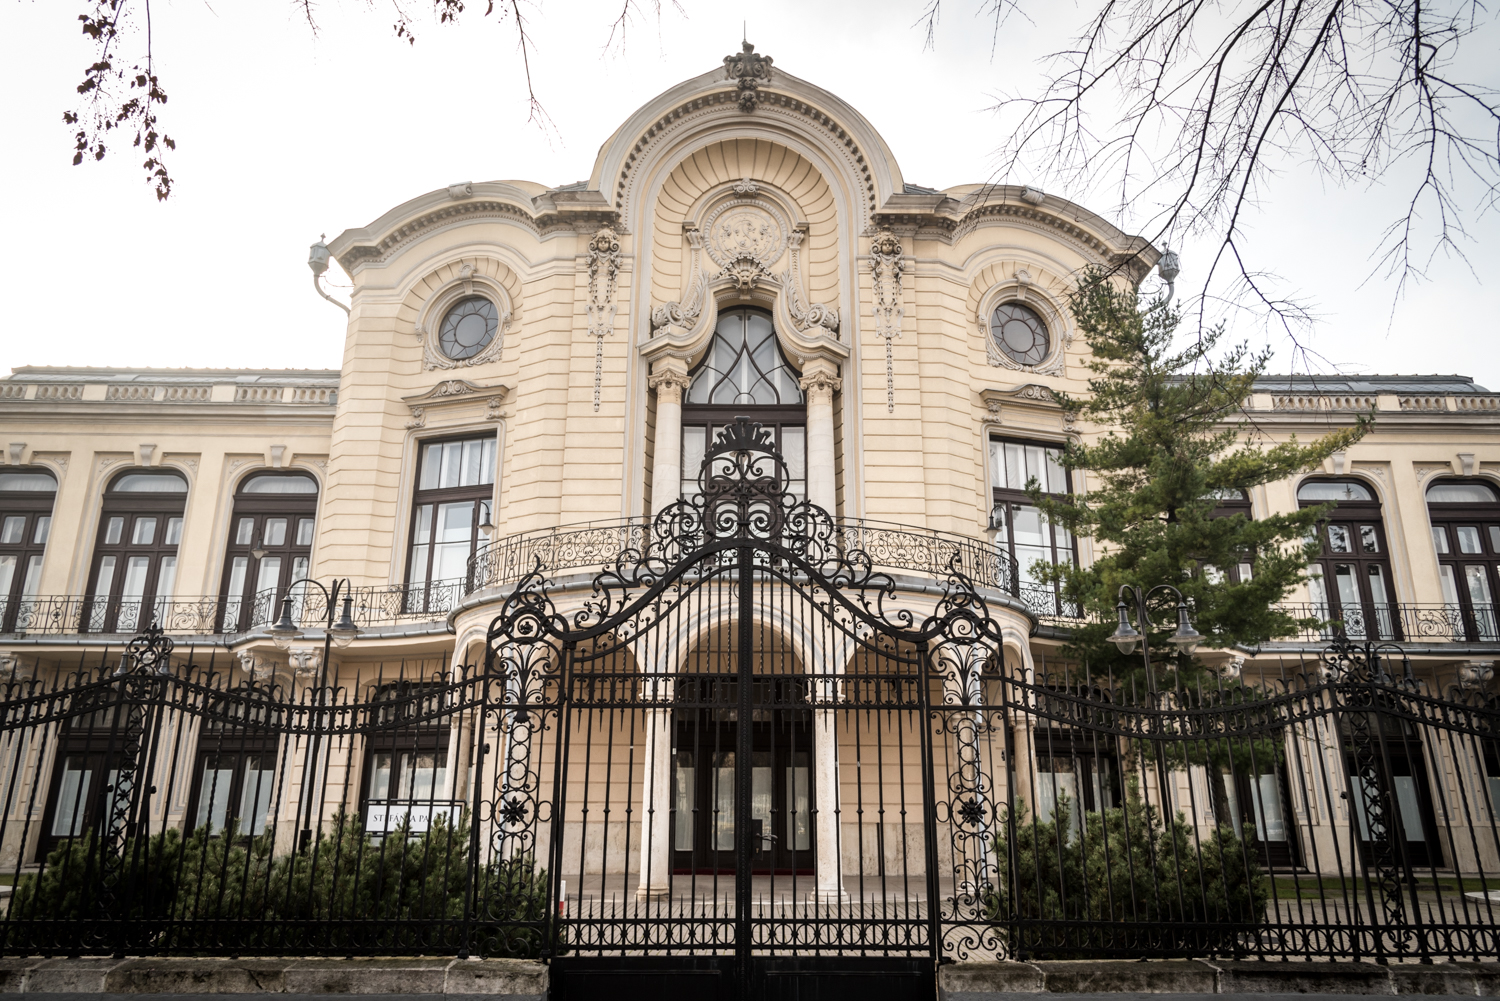 Micsoda fordulat! – funkciót váltott budapesti épületek (II. rész)